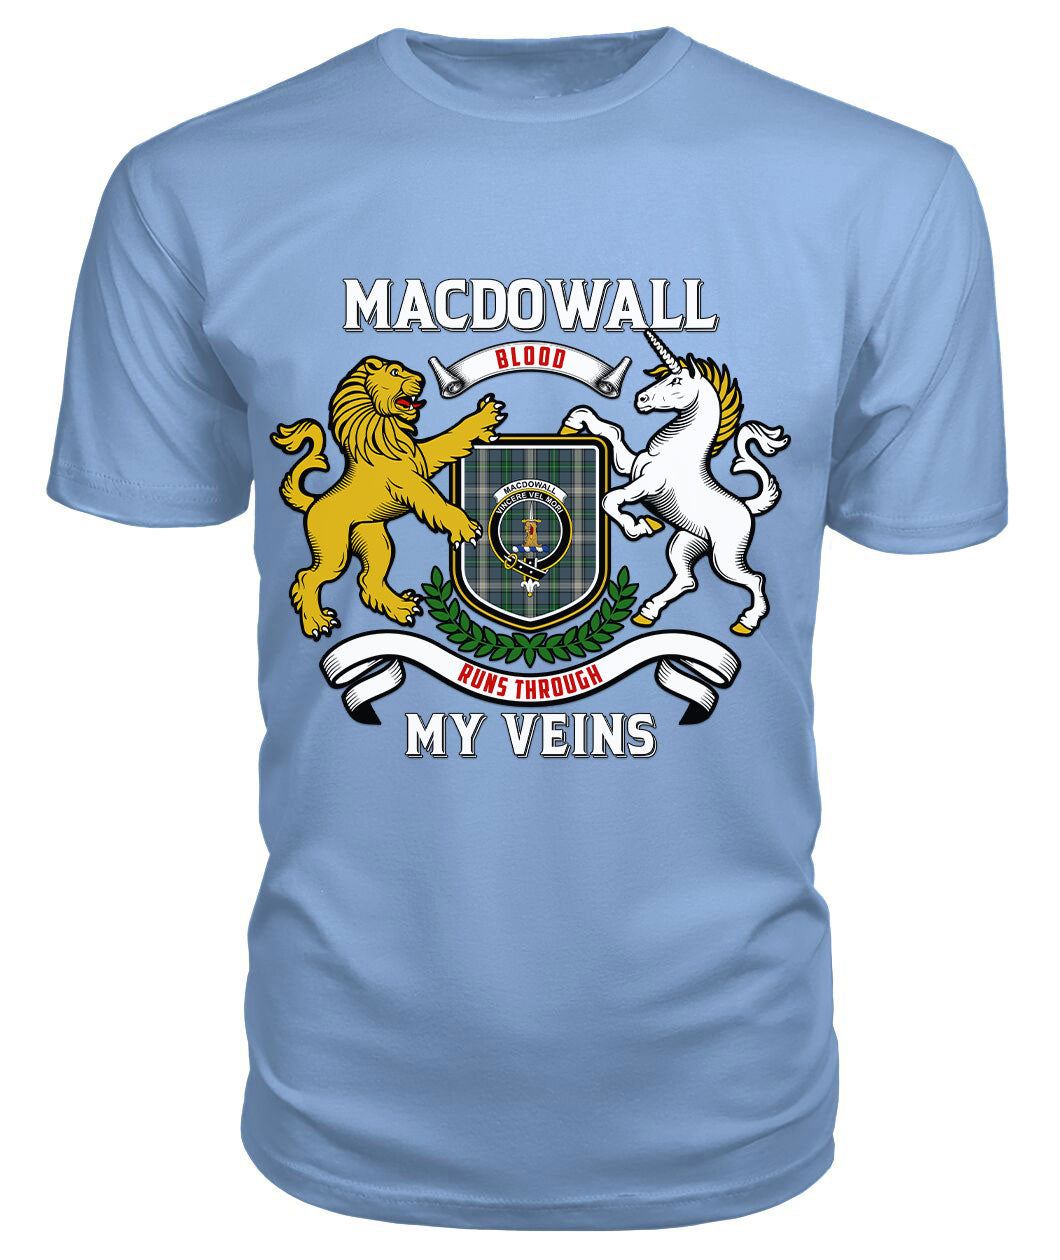 MacDowall Tartan Crest 2D T-shirt - Blood Runs Through My Veins Style